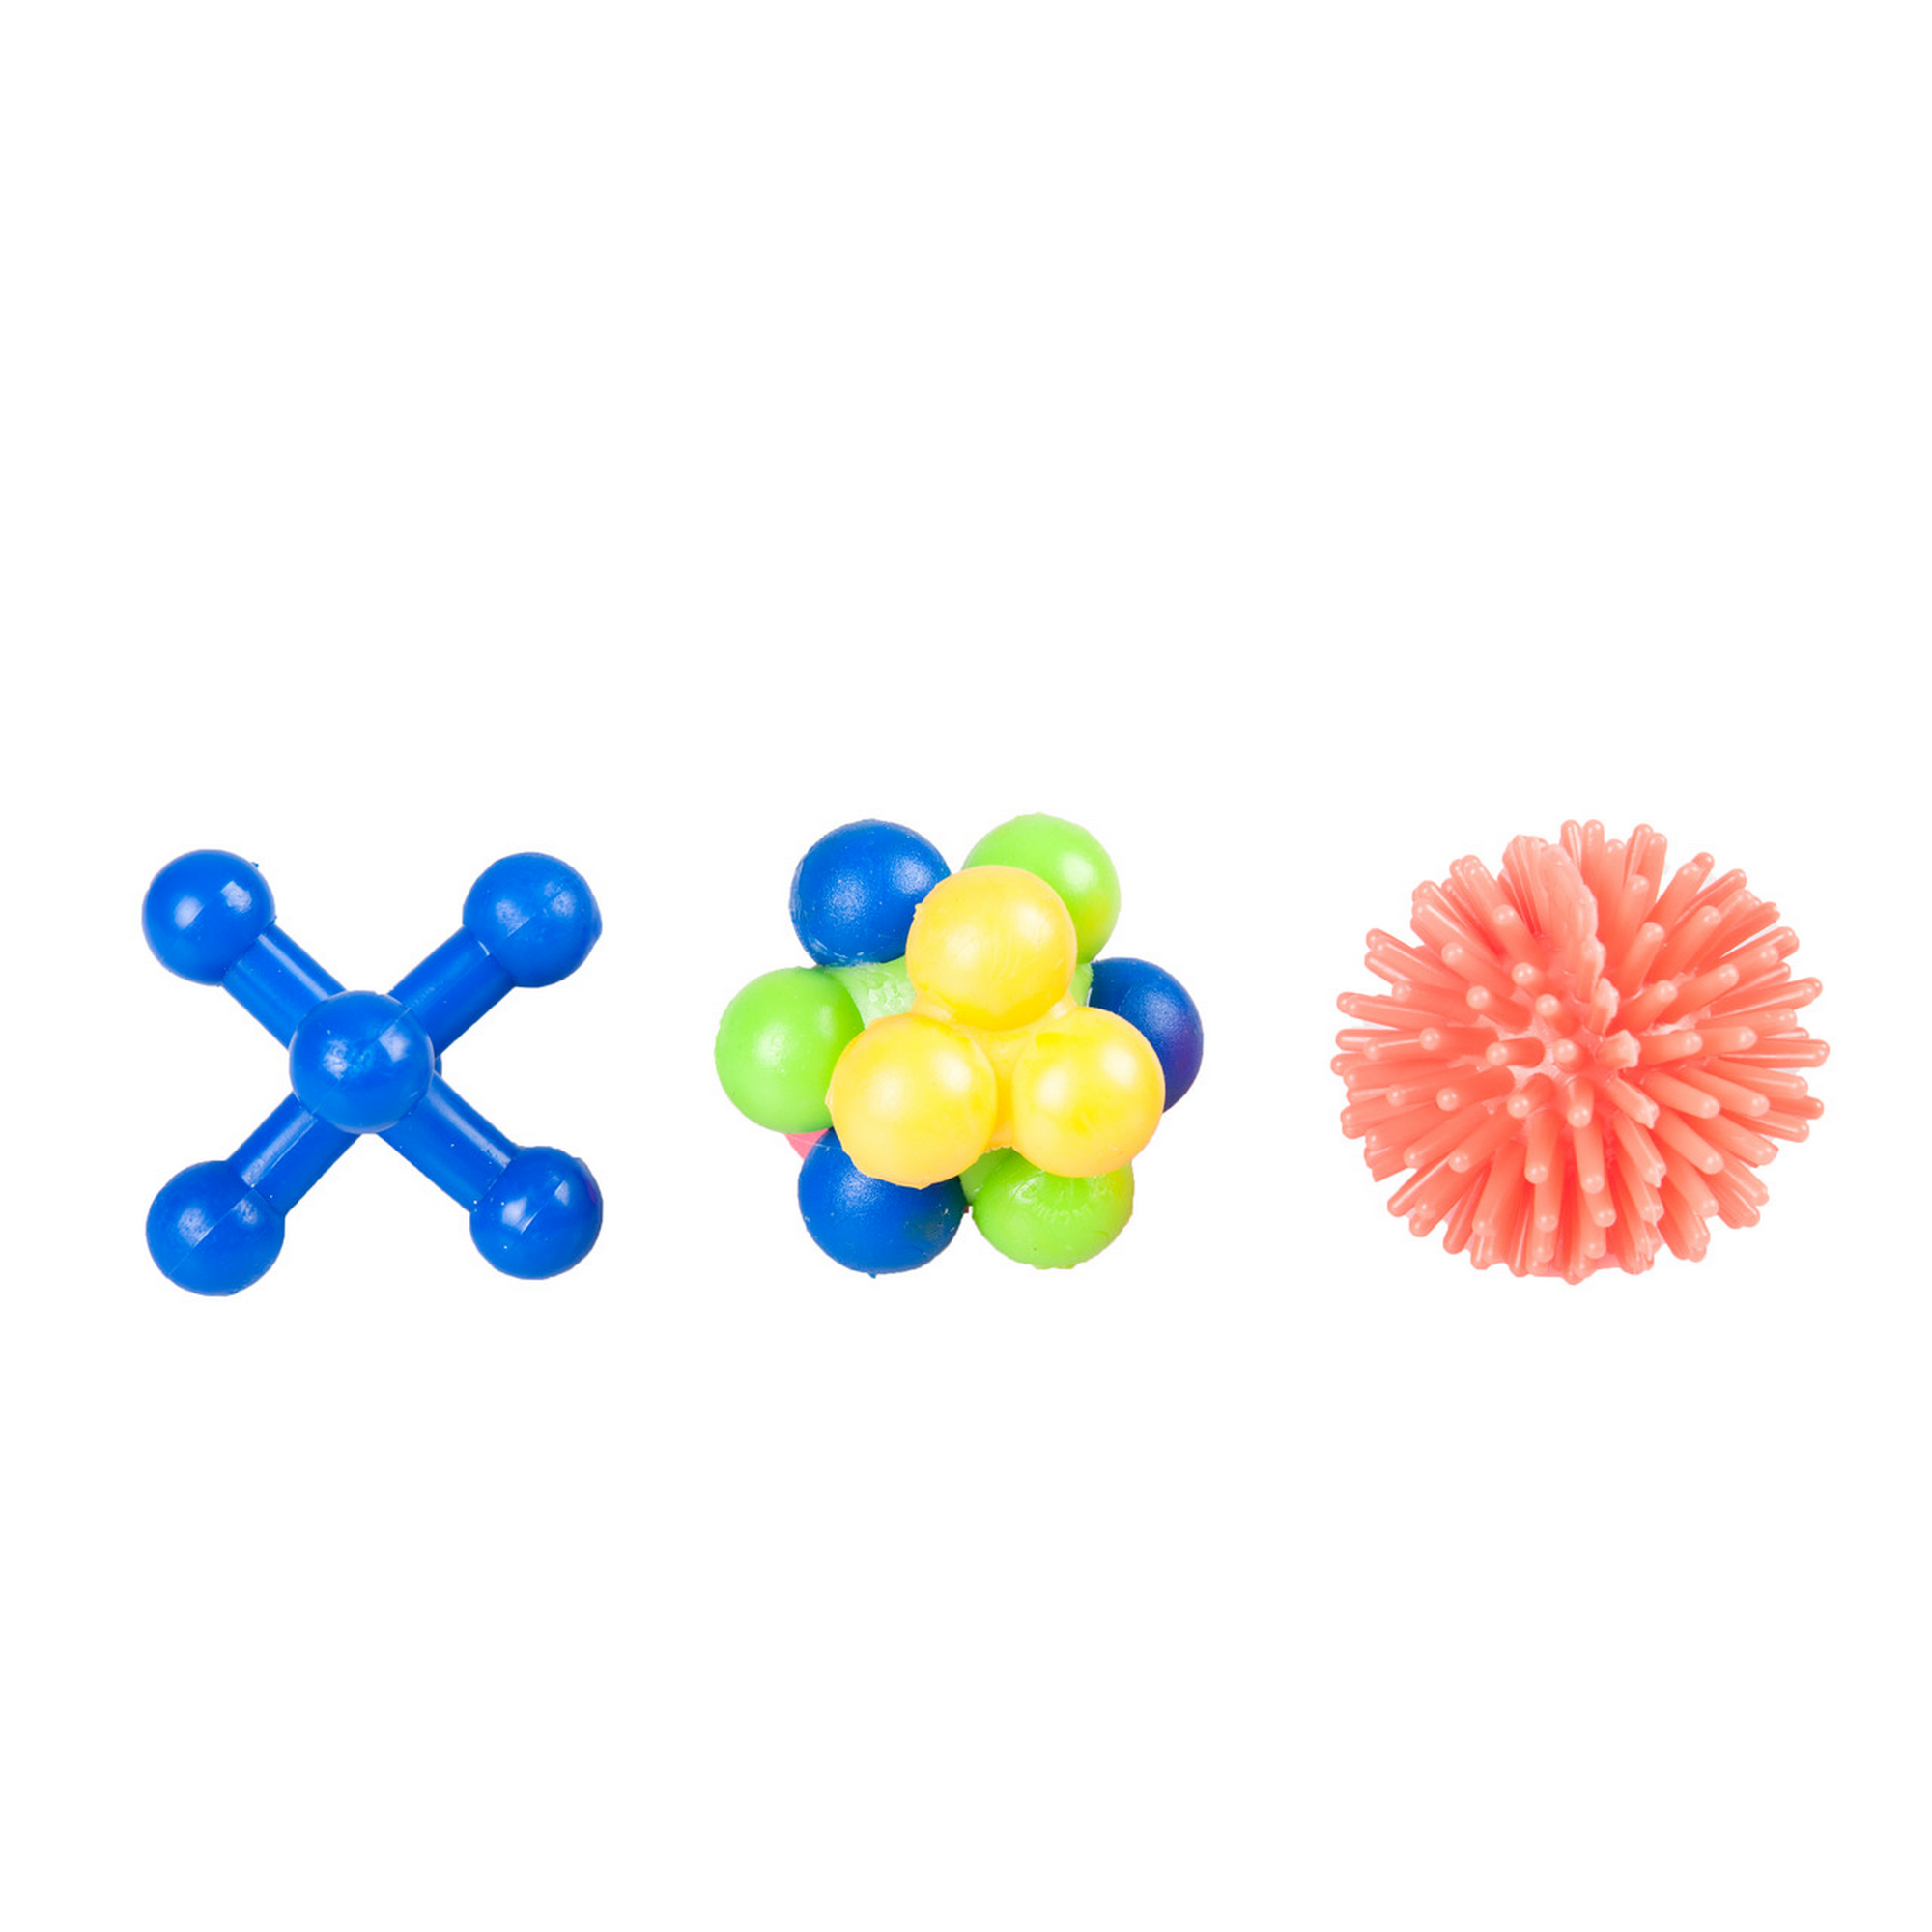 Gummispielzeug 3 Stk. 4 cm, farblich sortiert + product picture